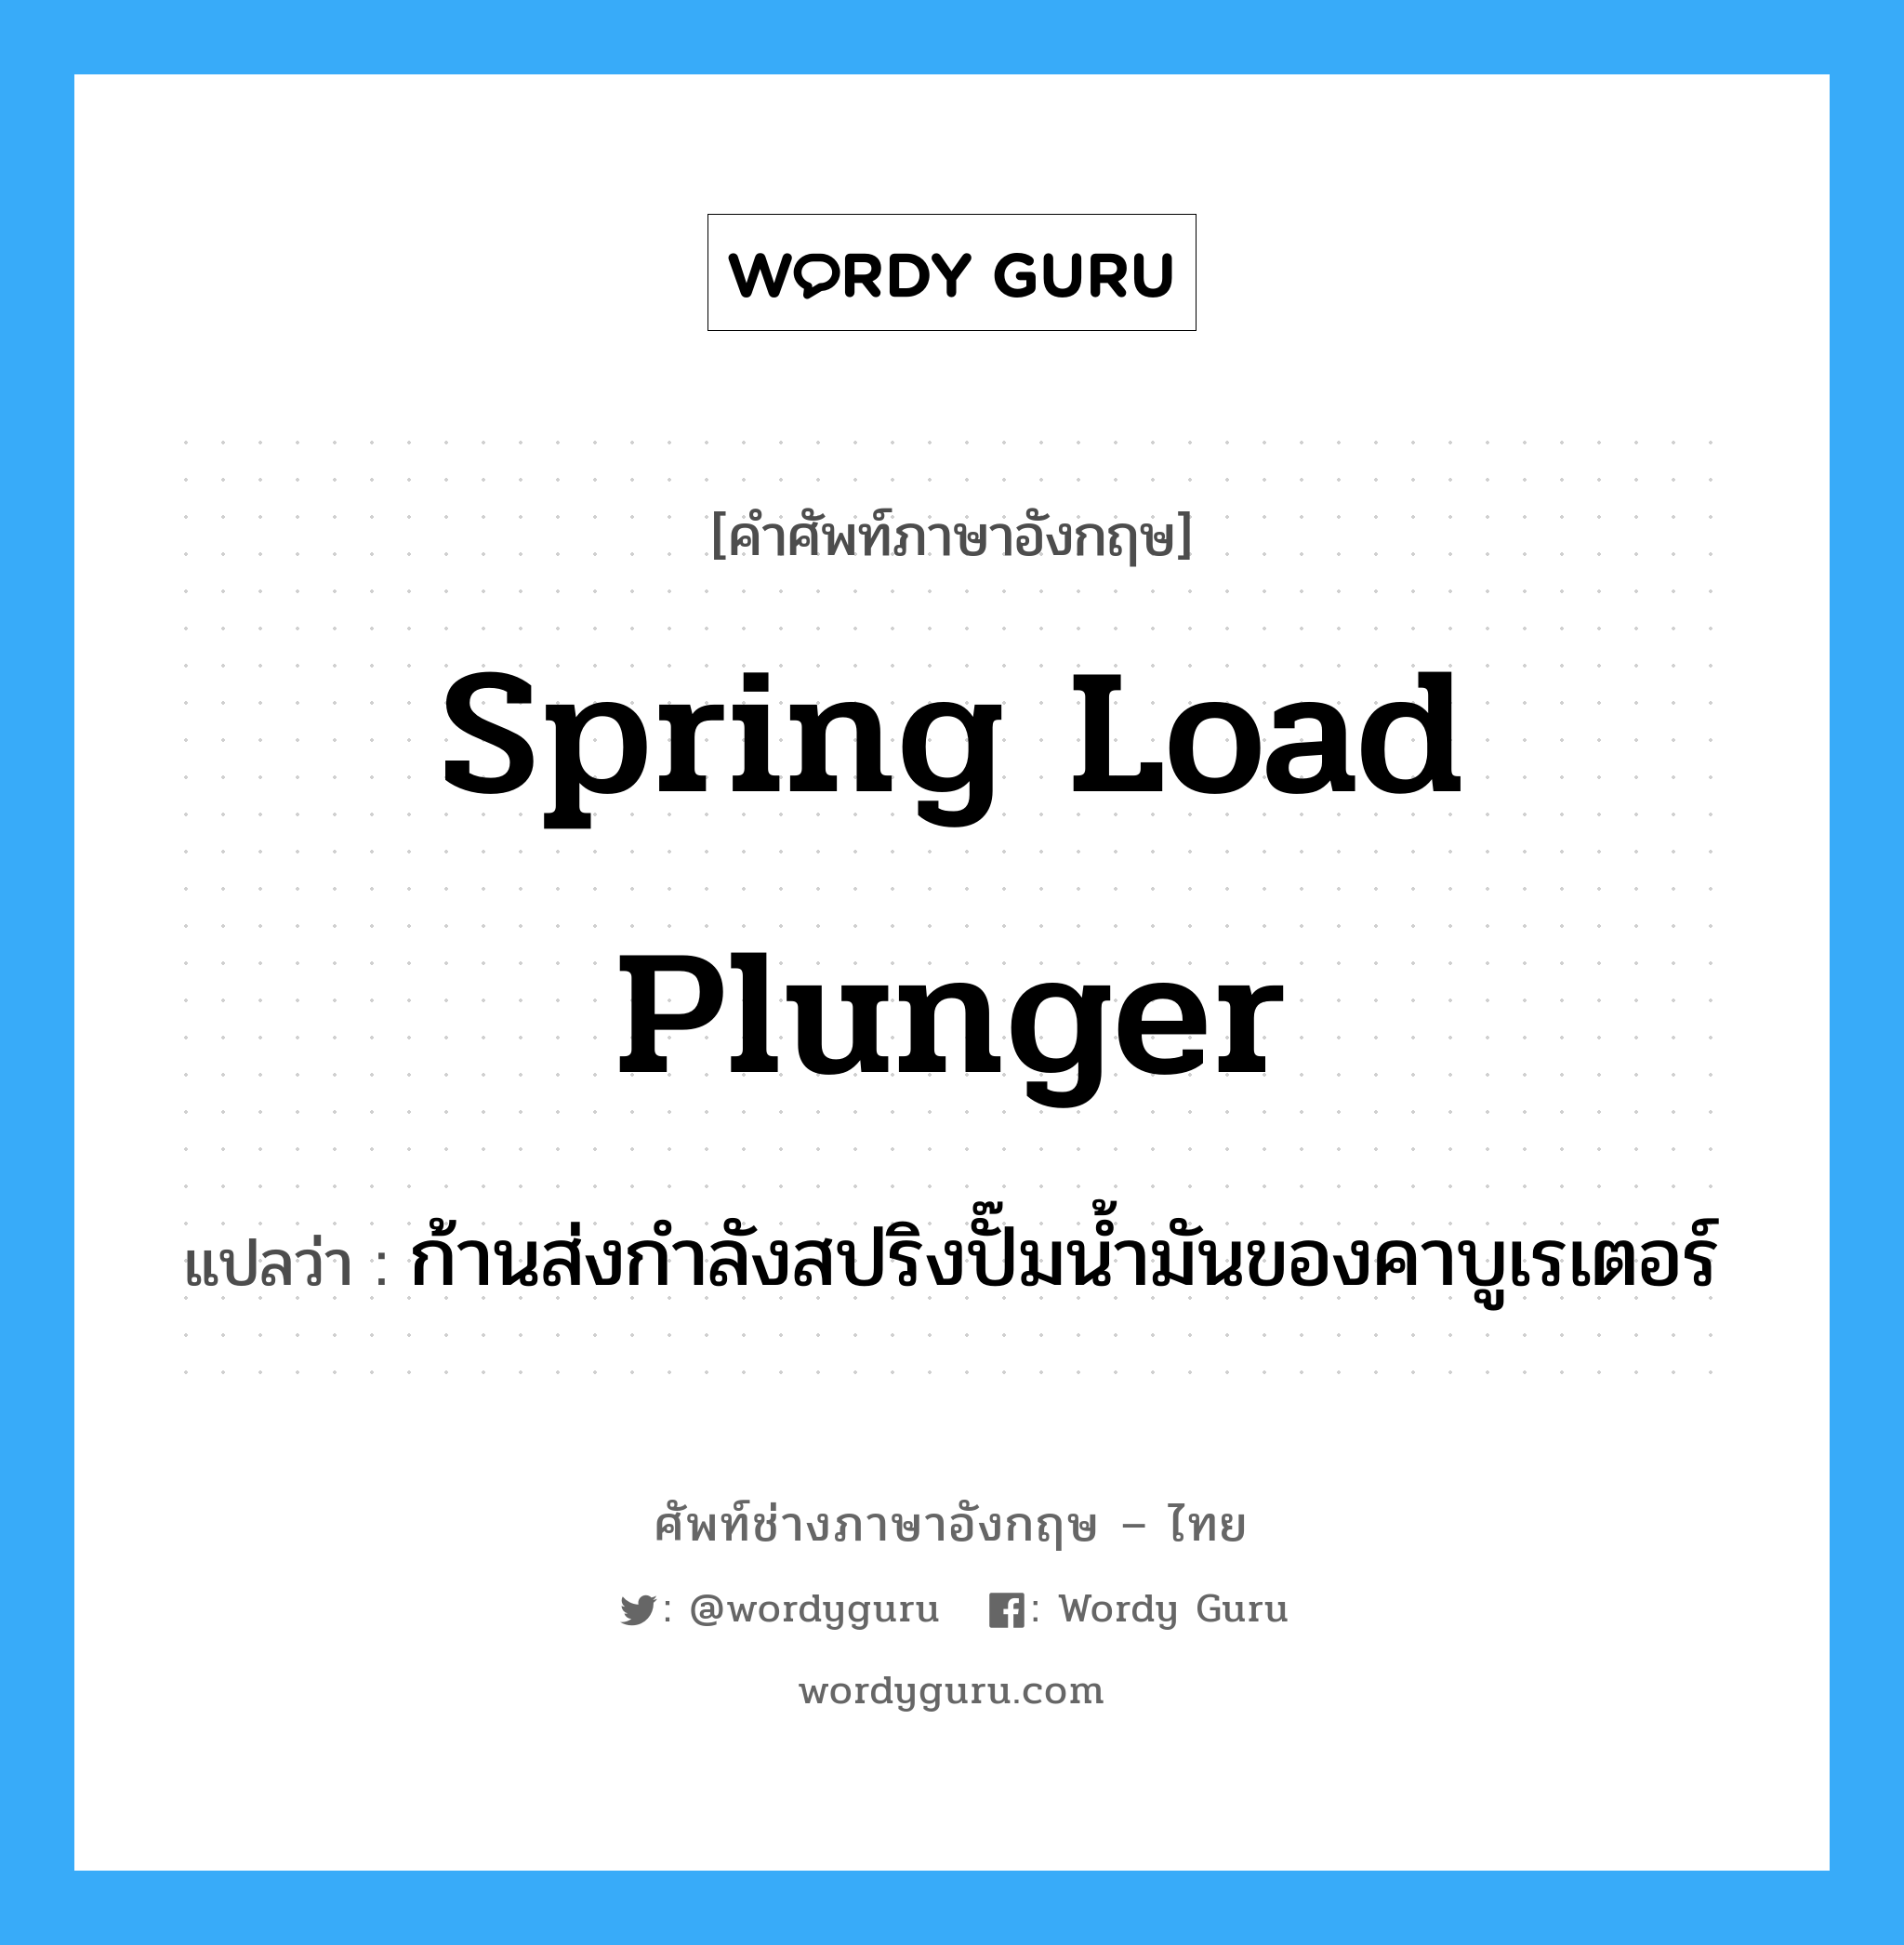 spring load plunger แปลว่า?, คำศัพท์ช่างภาษาอังกฤษ - ไทย spring load plunger คำศัพท์ภาษาอังกฤษ spring load plunger แปลว่า ก้านส่งกำลังสปริงปั๊มน้ำมันของคาบูเรเตอร์